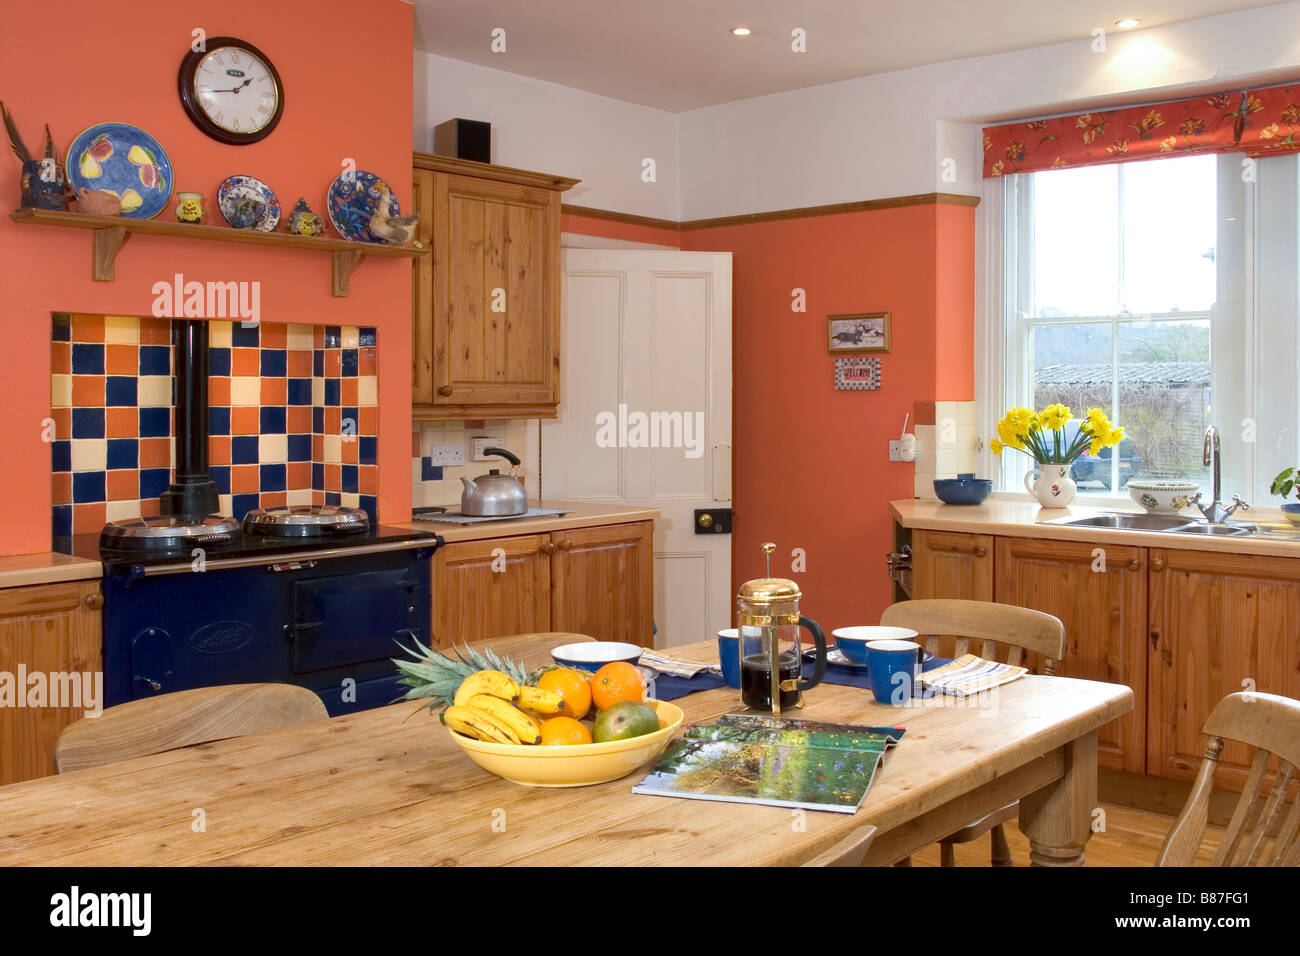 UK. Ein Haus, Inneneinrichtung, Küche und Essbereich. Stockfoto